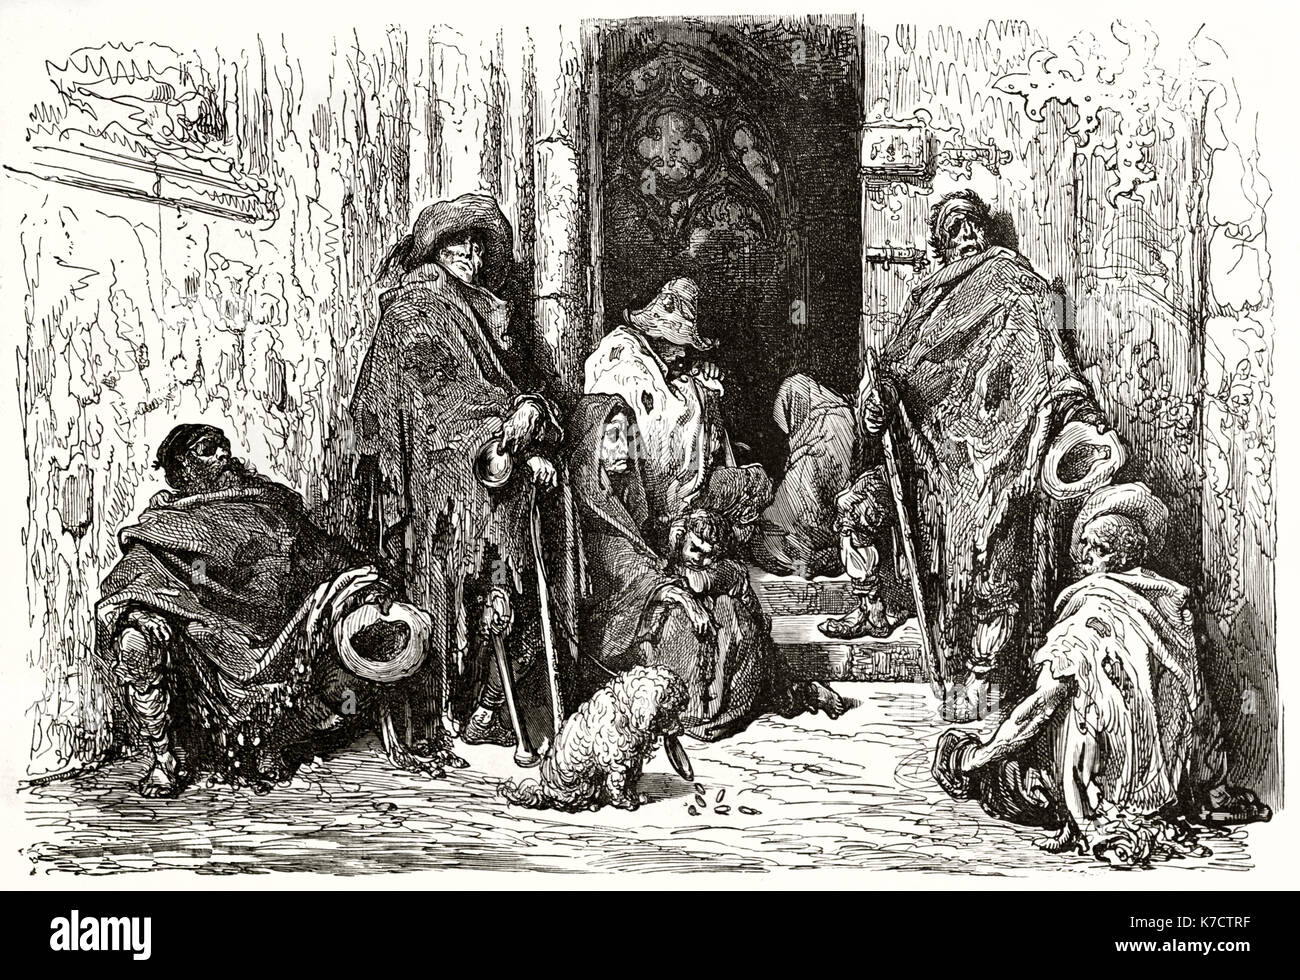 Vecchia immagine raffigurante mendicanti nel chiostro della cattedrale di Barcellona. Da Dore, publ. in Le Tour du Monde, Parigi, 1862 Foto Stock